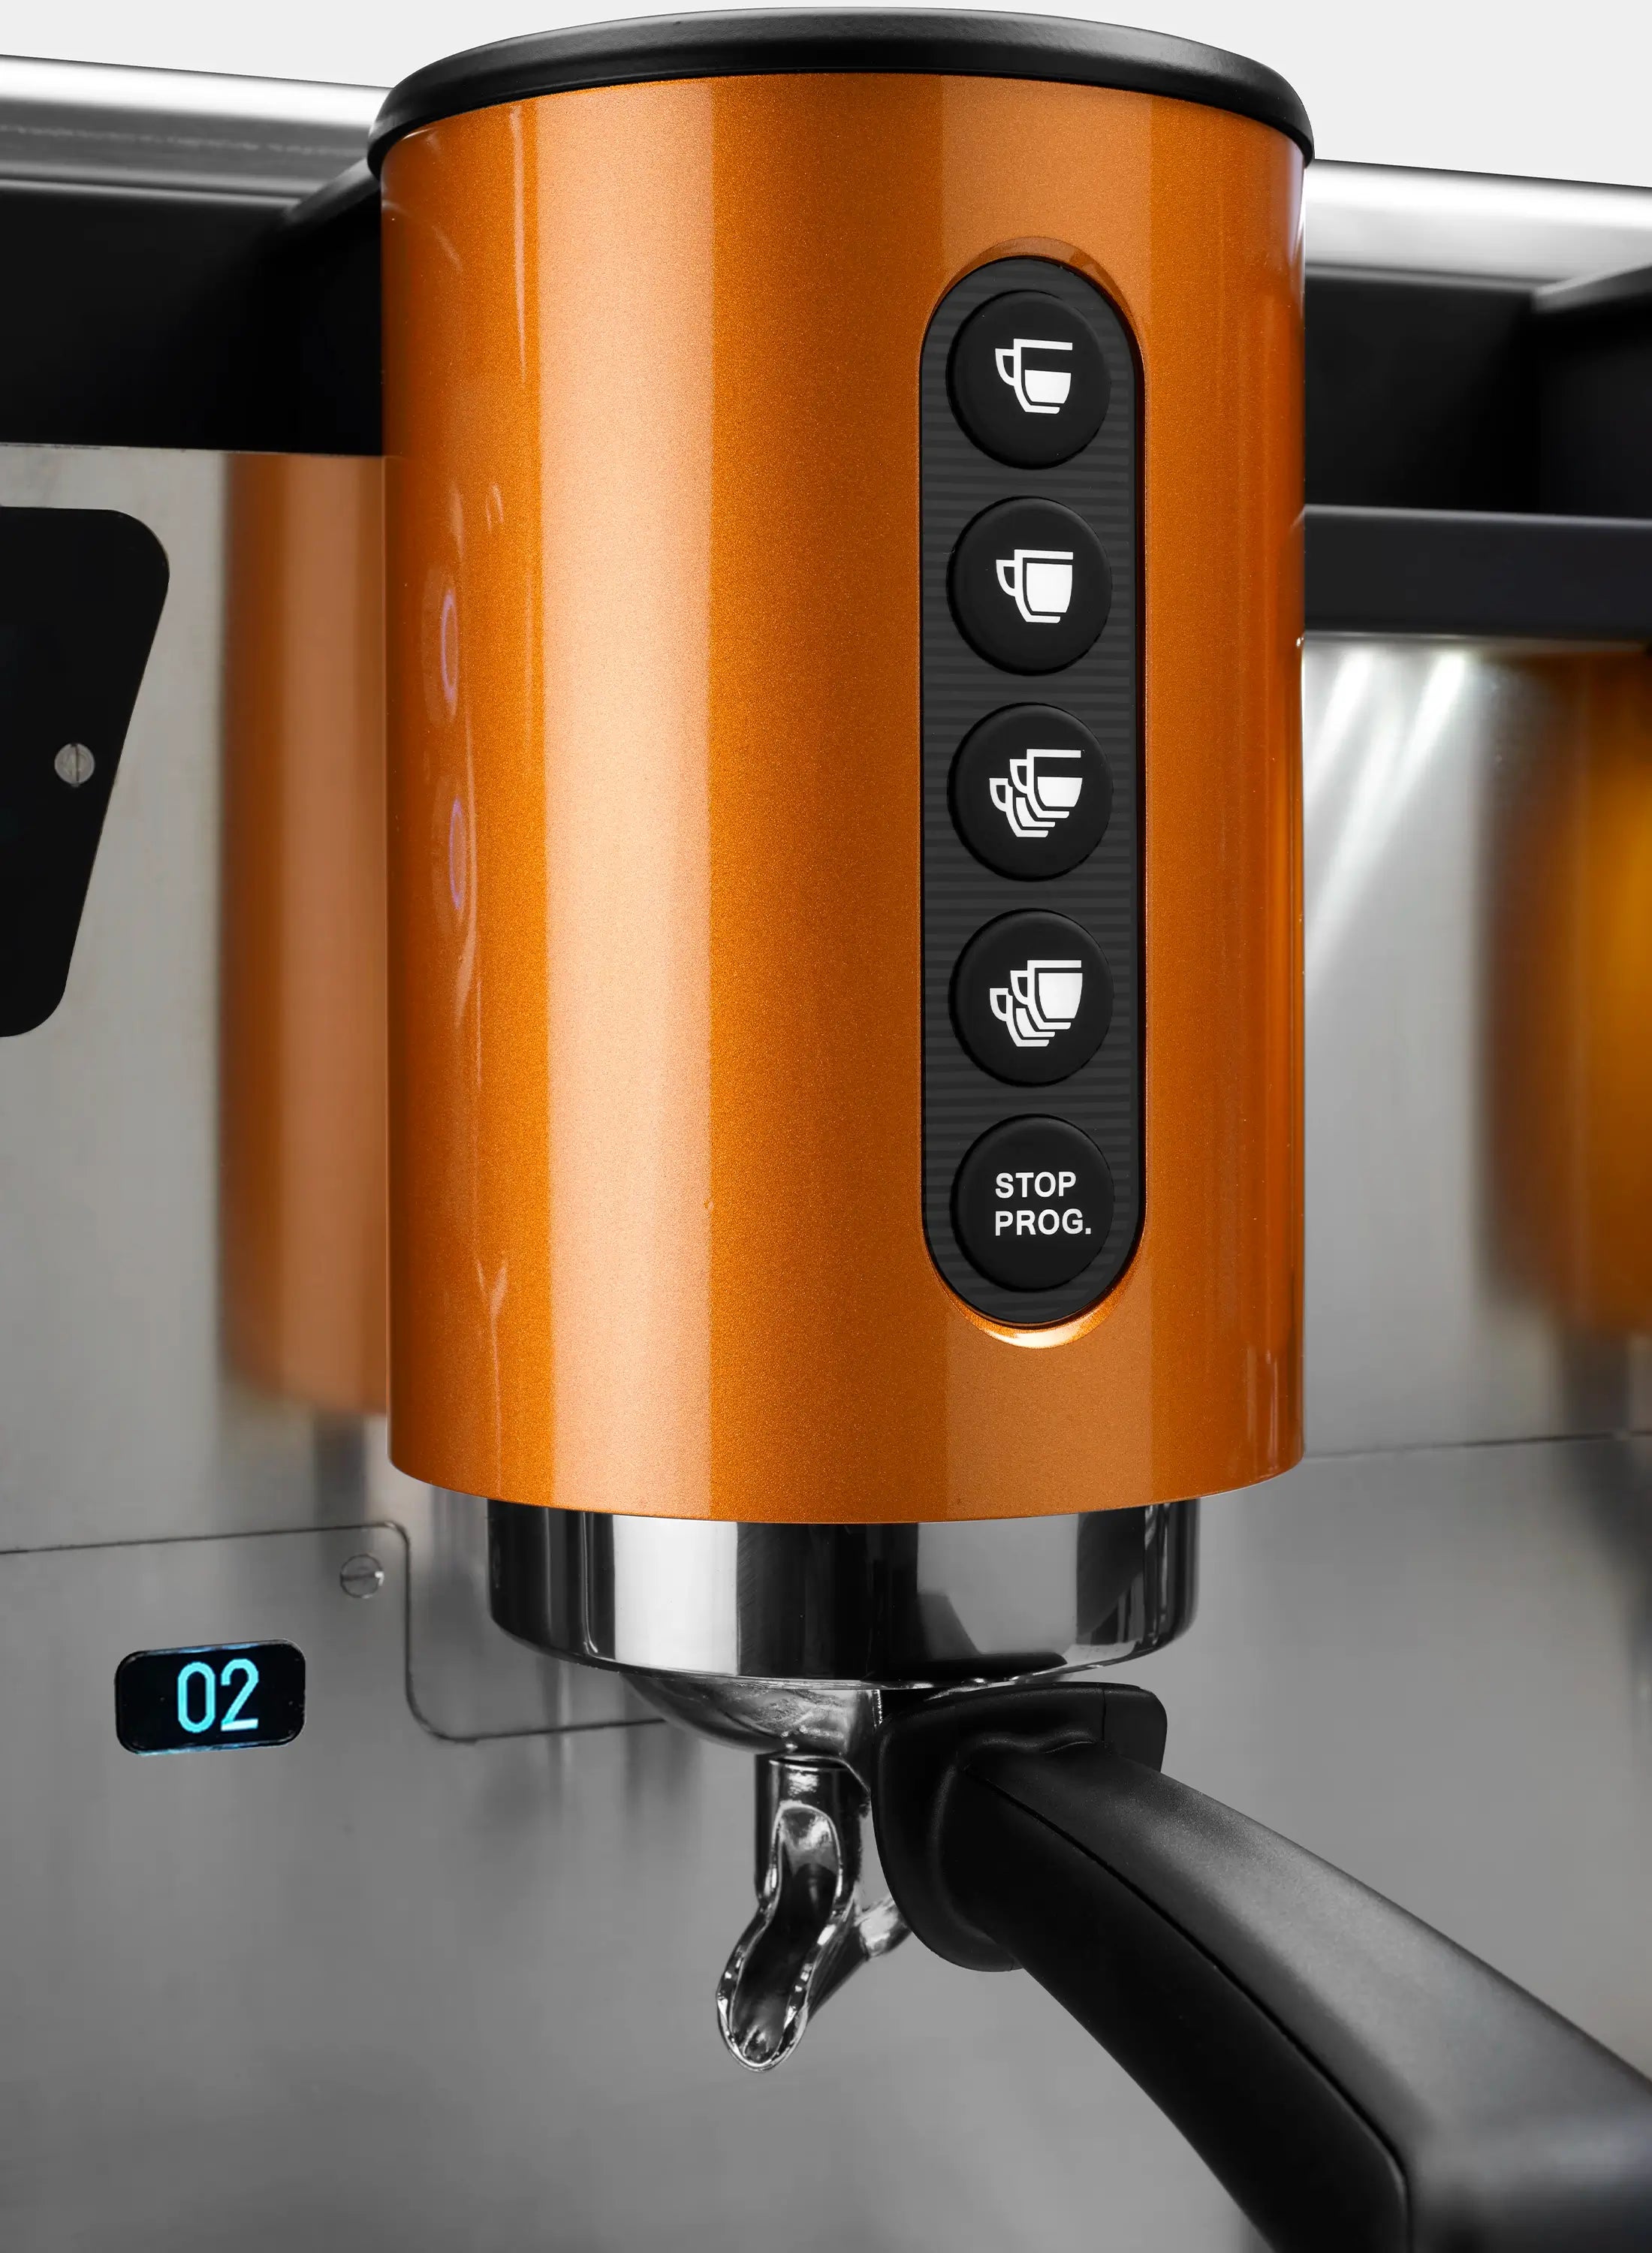 Wega WBar 3 Group Commercial Espresso Machine